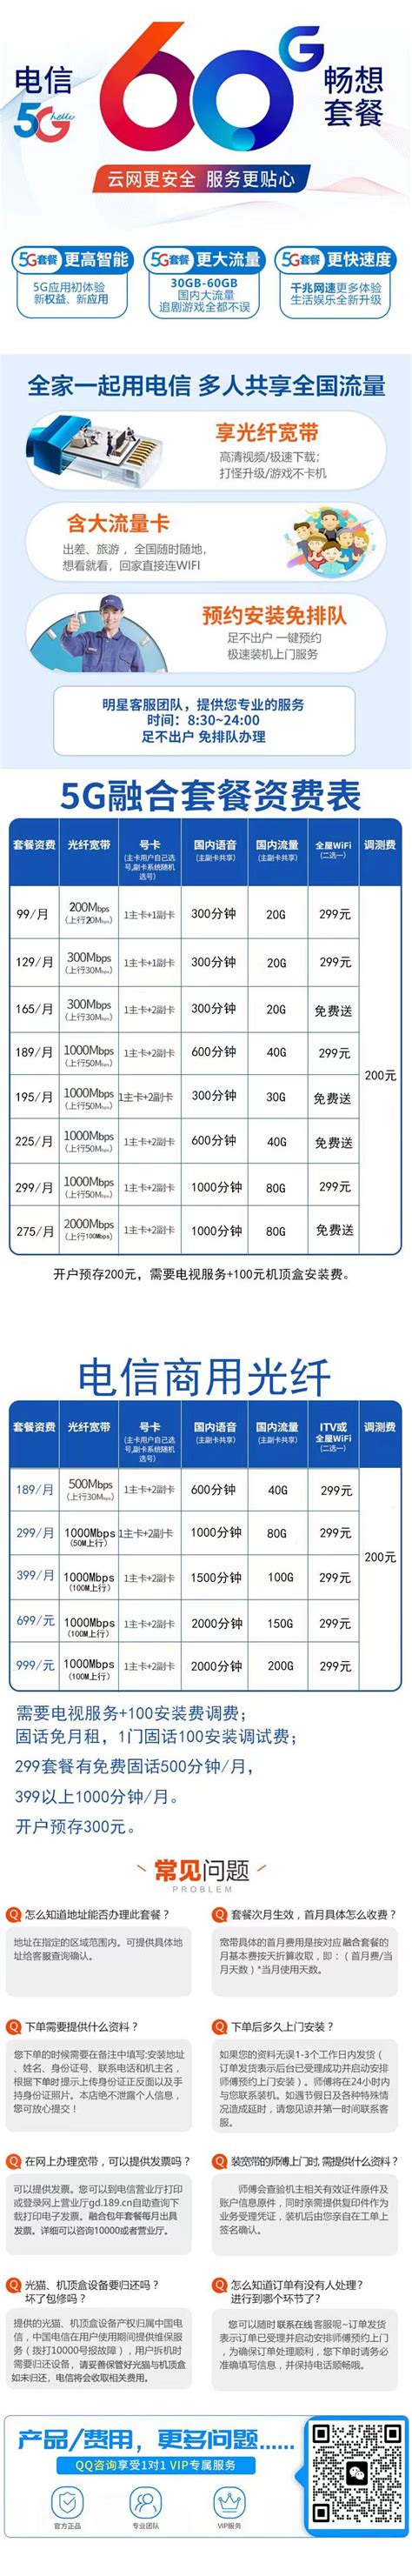 杭州电信包月宽带200M宽带每月60元 - 纯宽新装 - 杭州电信宽带-杭州电信宽带网上在线优惠办理-2021电信套餐价格